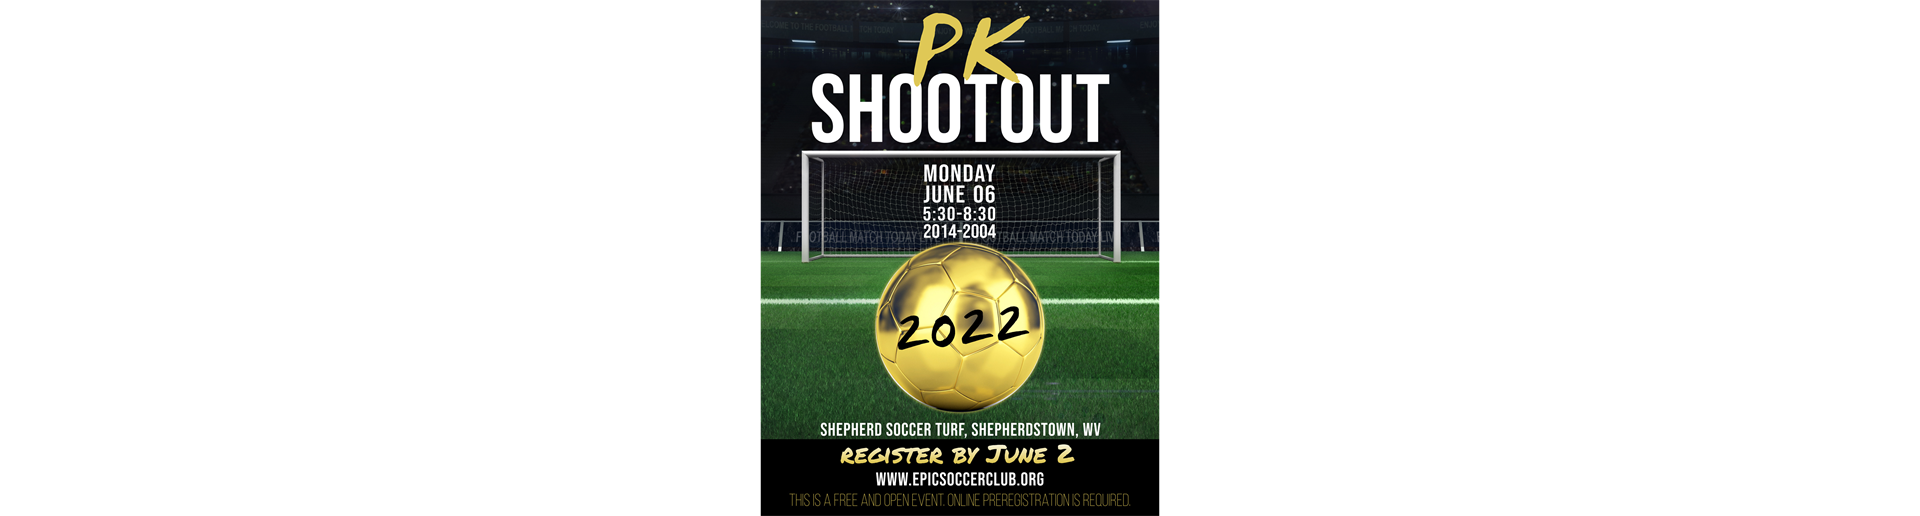 2022 PK Shootout